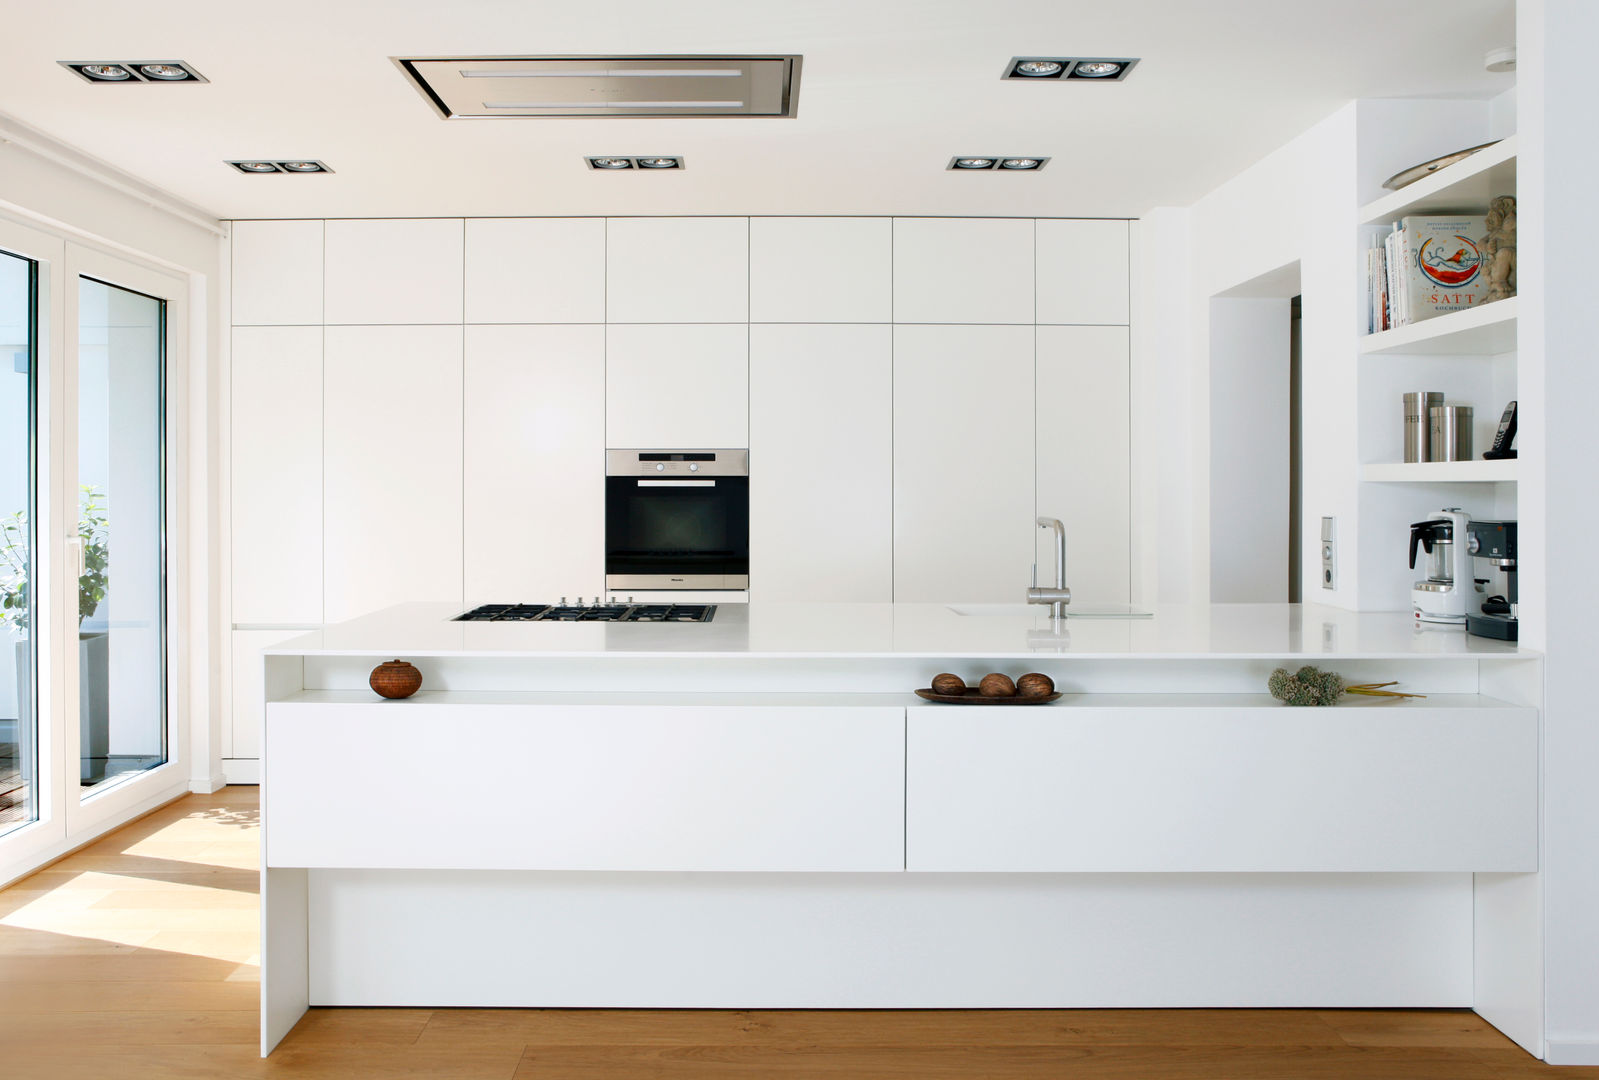 Küche R., rother küchenkonzepte + möbeldesign Gmbh rother küchenkonzepte + möbeldesign Gmbh Kitchen